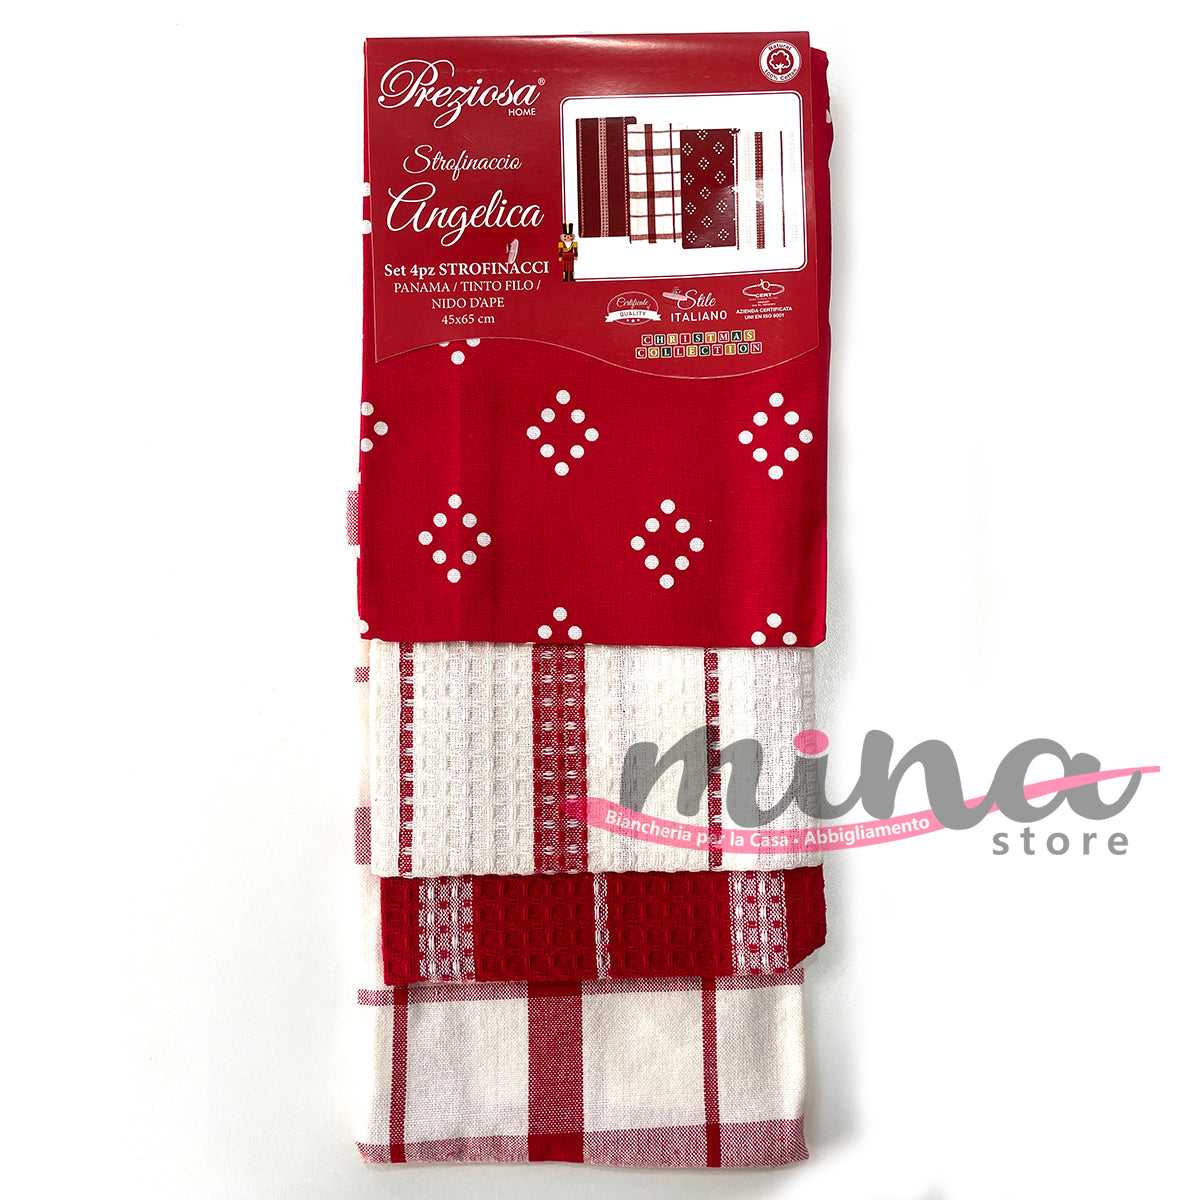 IDEA REGALO - Set 4 Strofinacci natalizi in Cotone, PREZIOSA mod. Angelica Made in Italy, natale